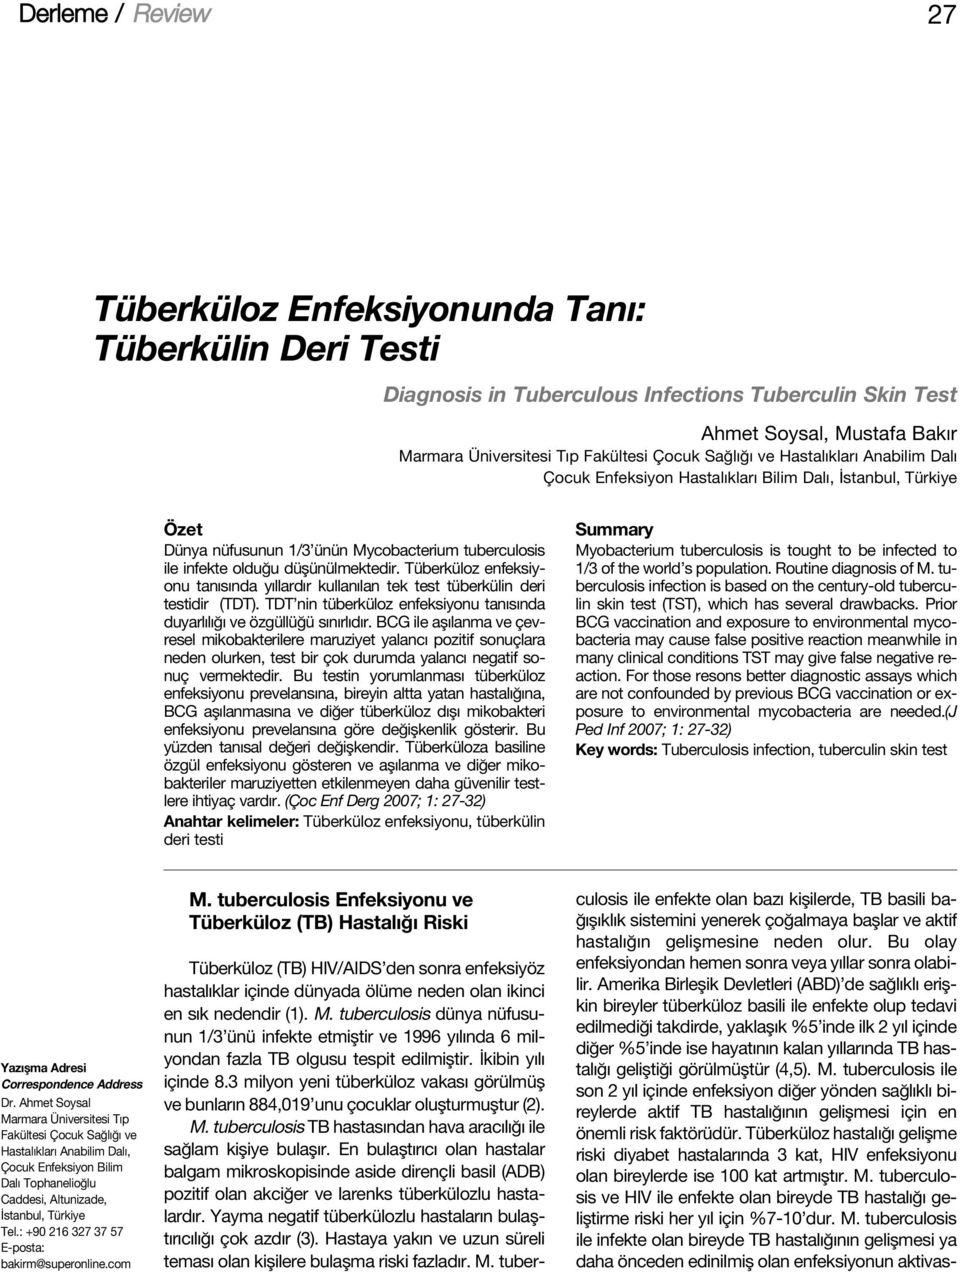 Tüberküloz enfeksiyonu tan s nda y llard r kullan lan tek test tüberkülin deri testidir (TDT). TDT nin tüberküloz enfeksiyonu tan s nda duyarl l ve özgüllü ü s n rl d r.